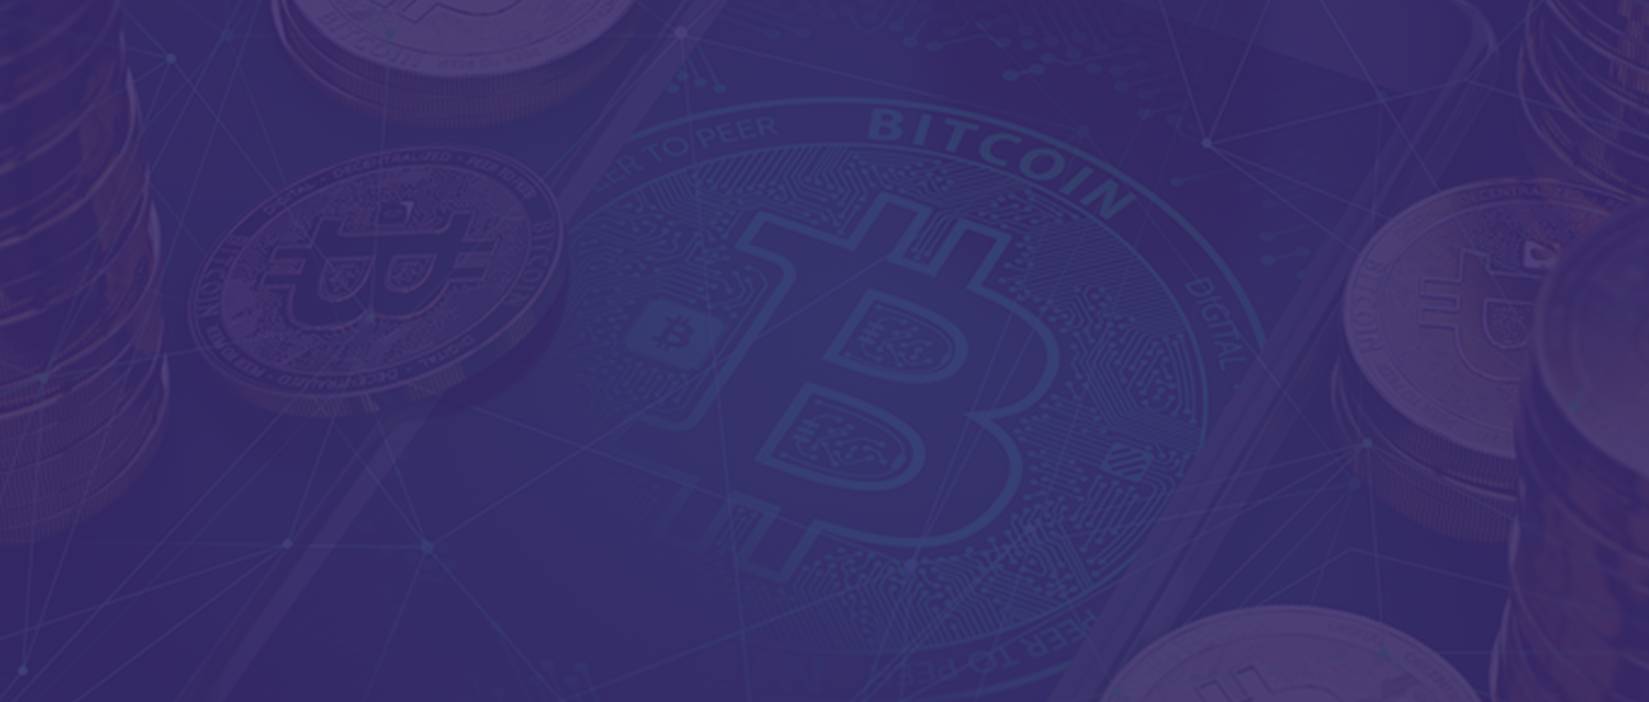 sito web bussola bitcoin